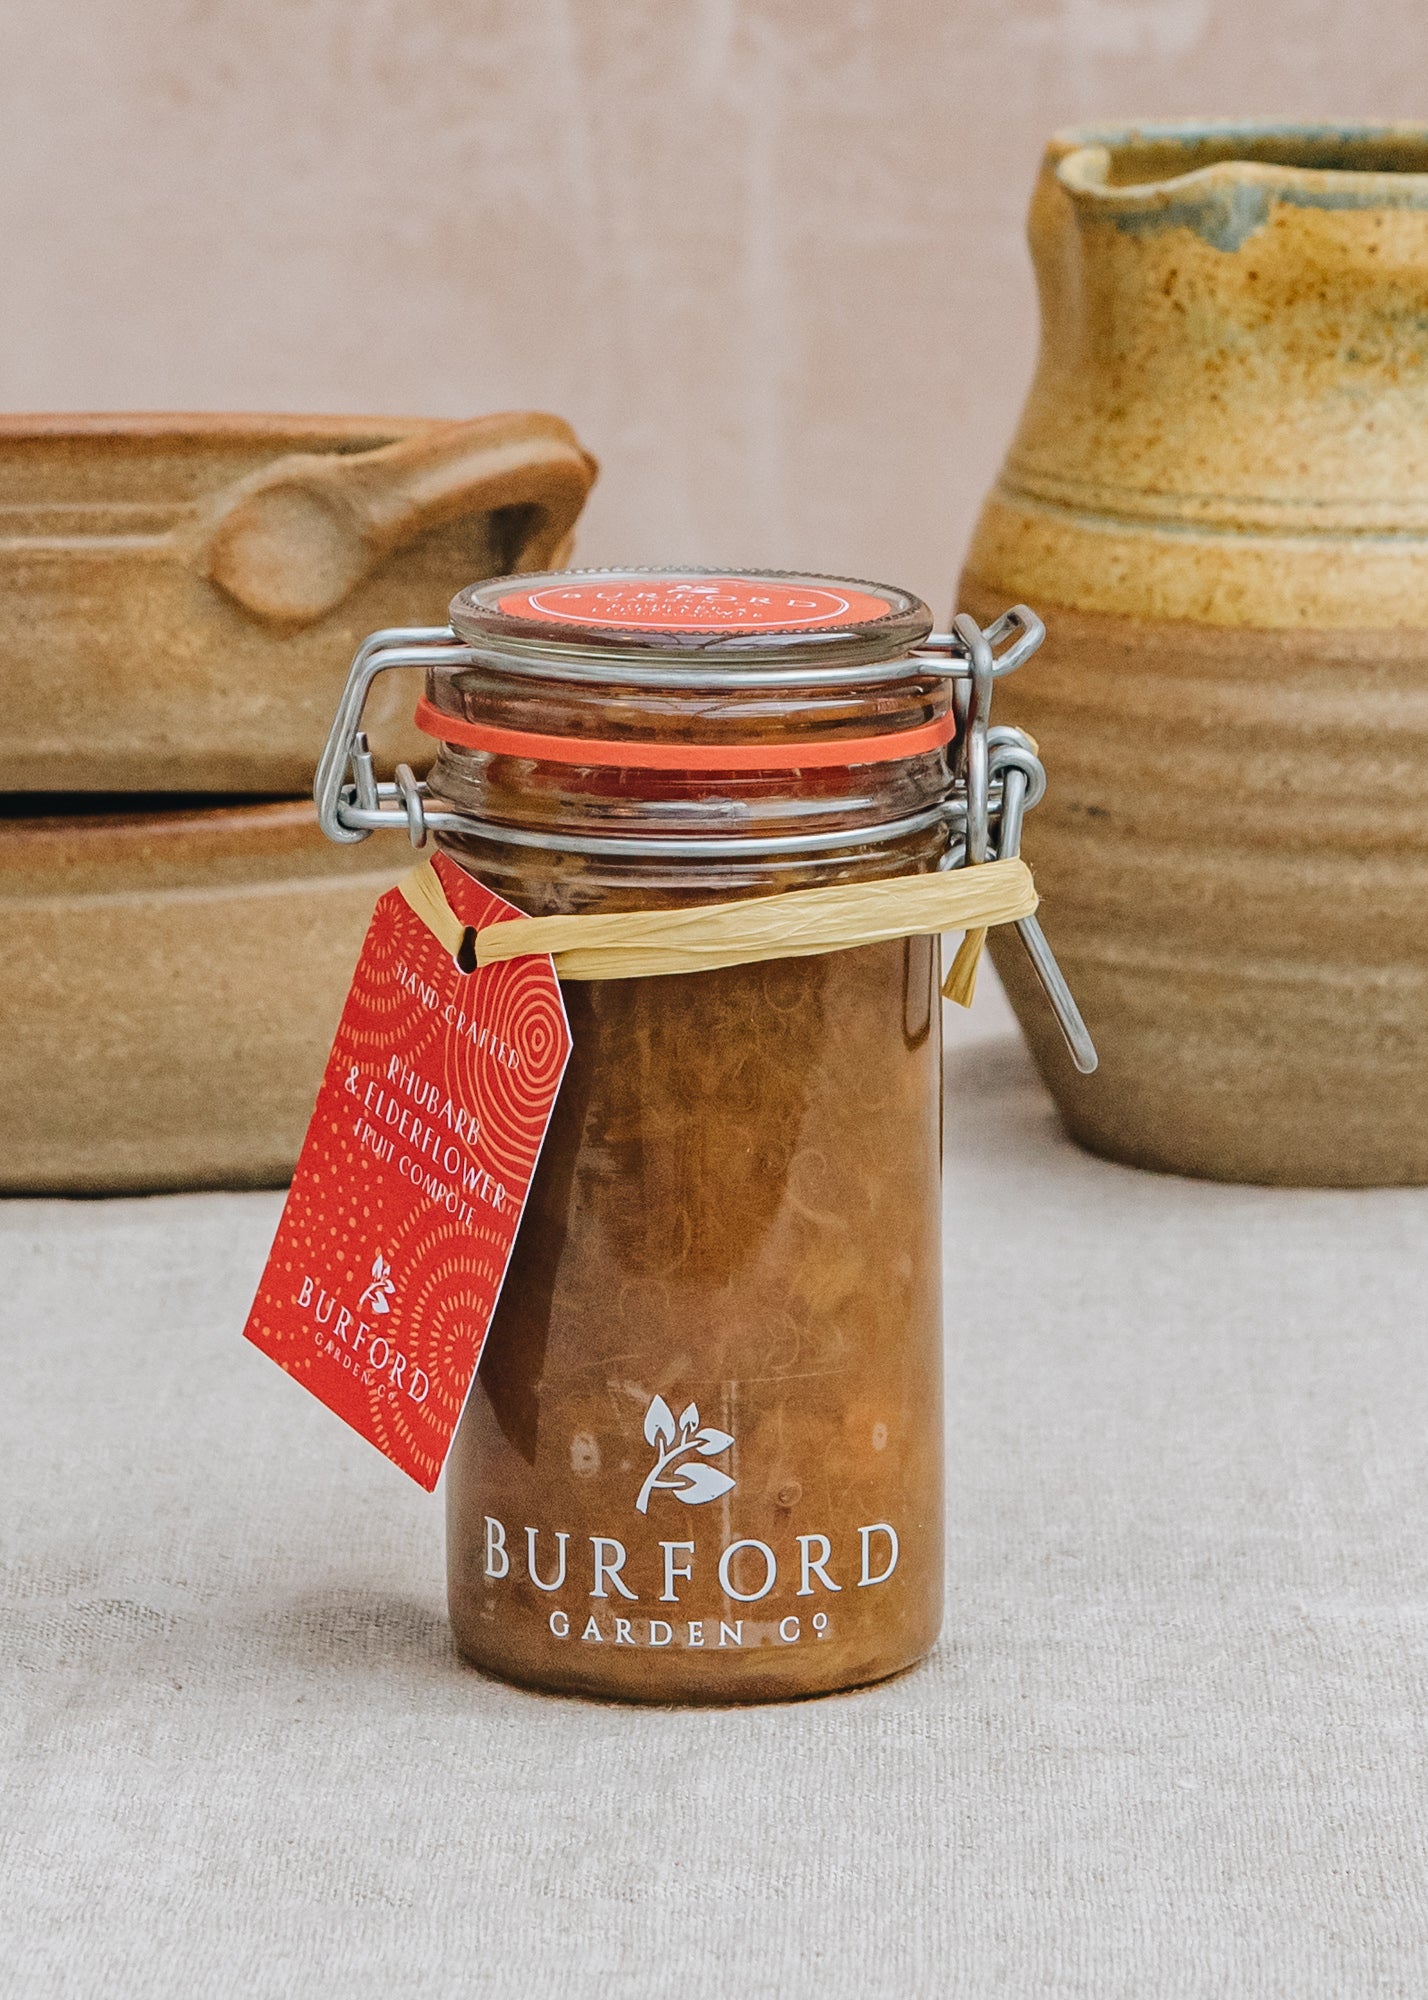 Burford Rhubarb & Elderflower Compote